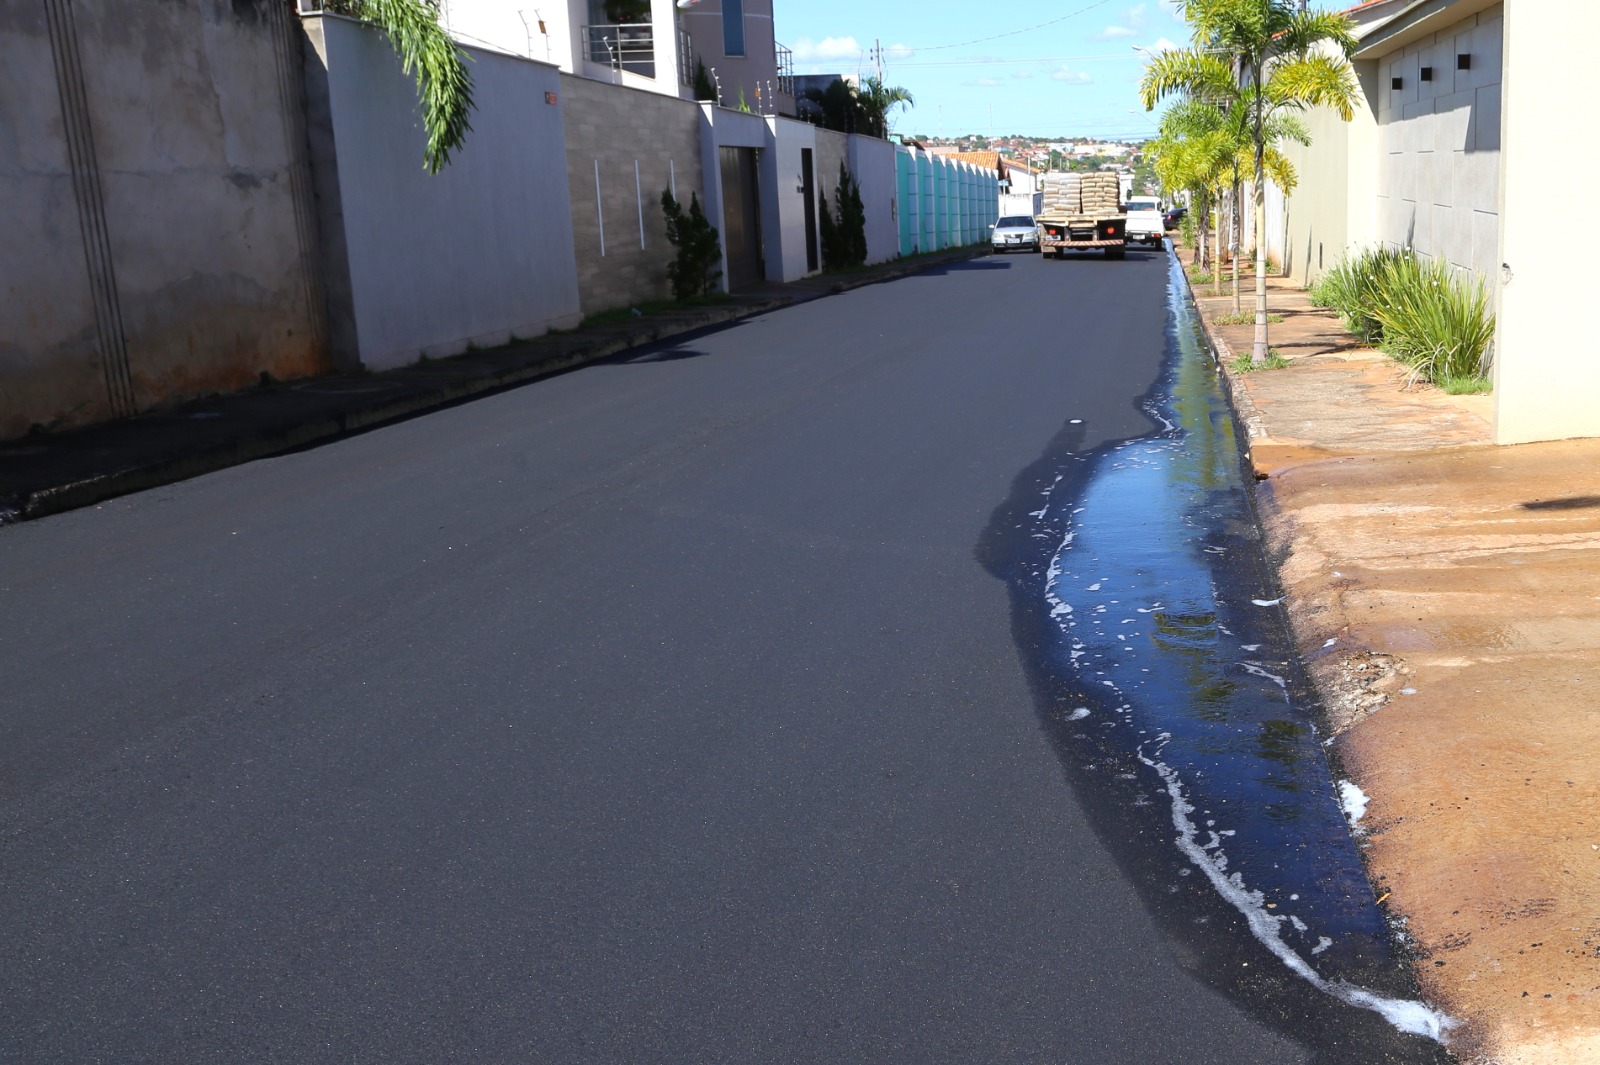 O Demupe atende uma média de duas ocorrências por dia sobre água servida, principalmente nos bairros que receberam nova pavimentação recentemente